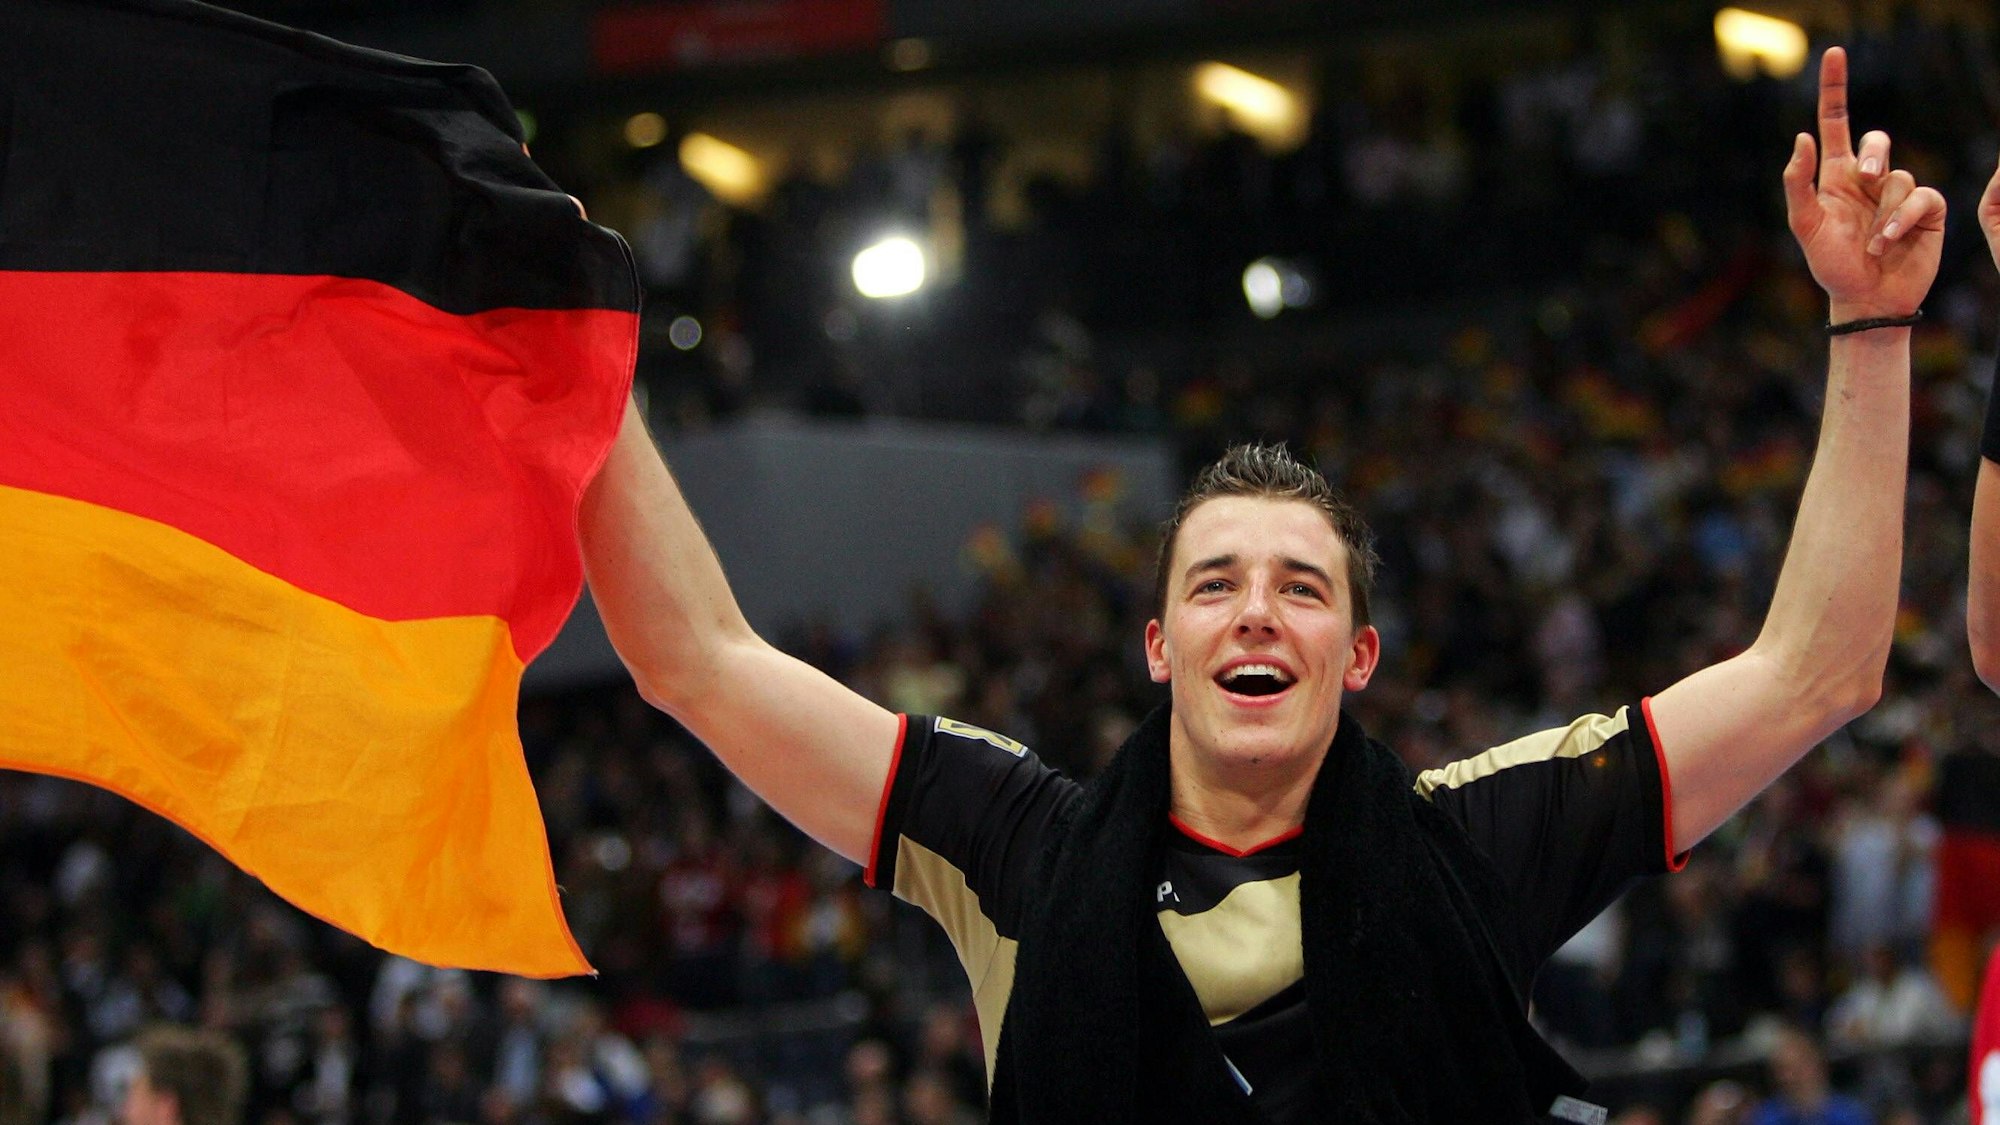 Dominik Klein jubelt nach dem WM-Halbfinale 2007 mit Deutschland-Flagge in der Hand.